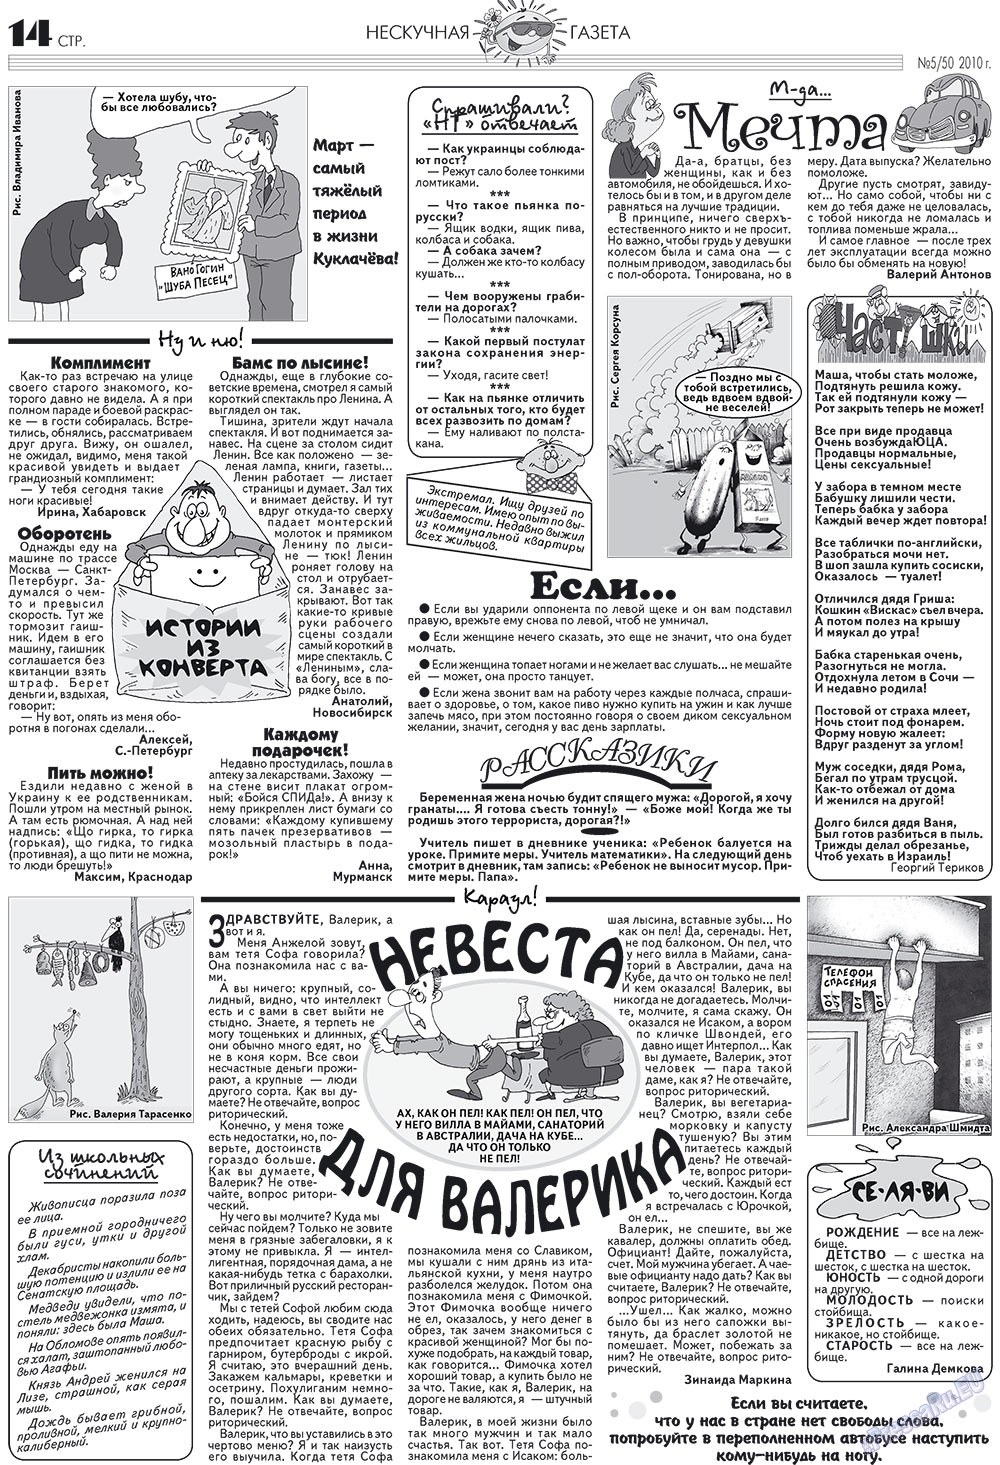 Нескучная газета, журнал. 2010 №5 стр.14